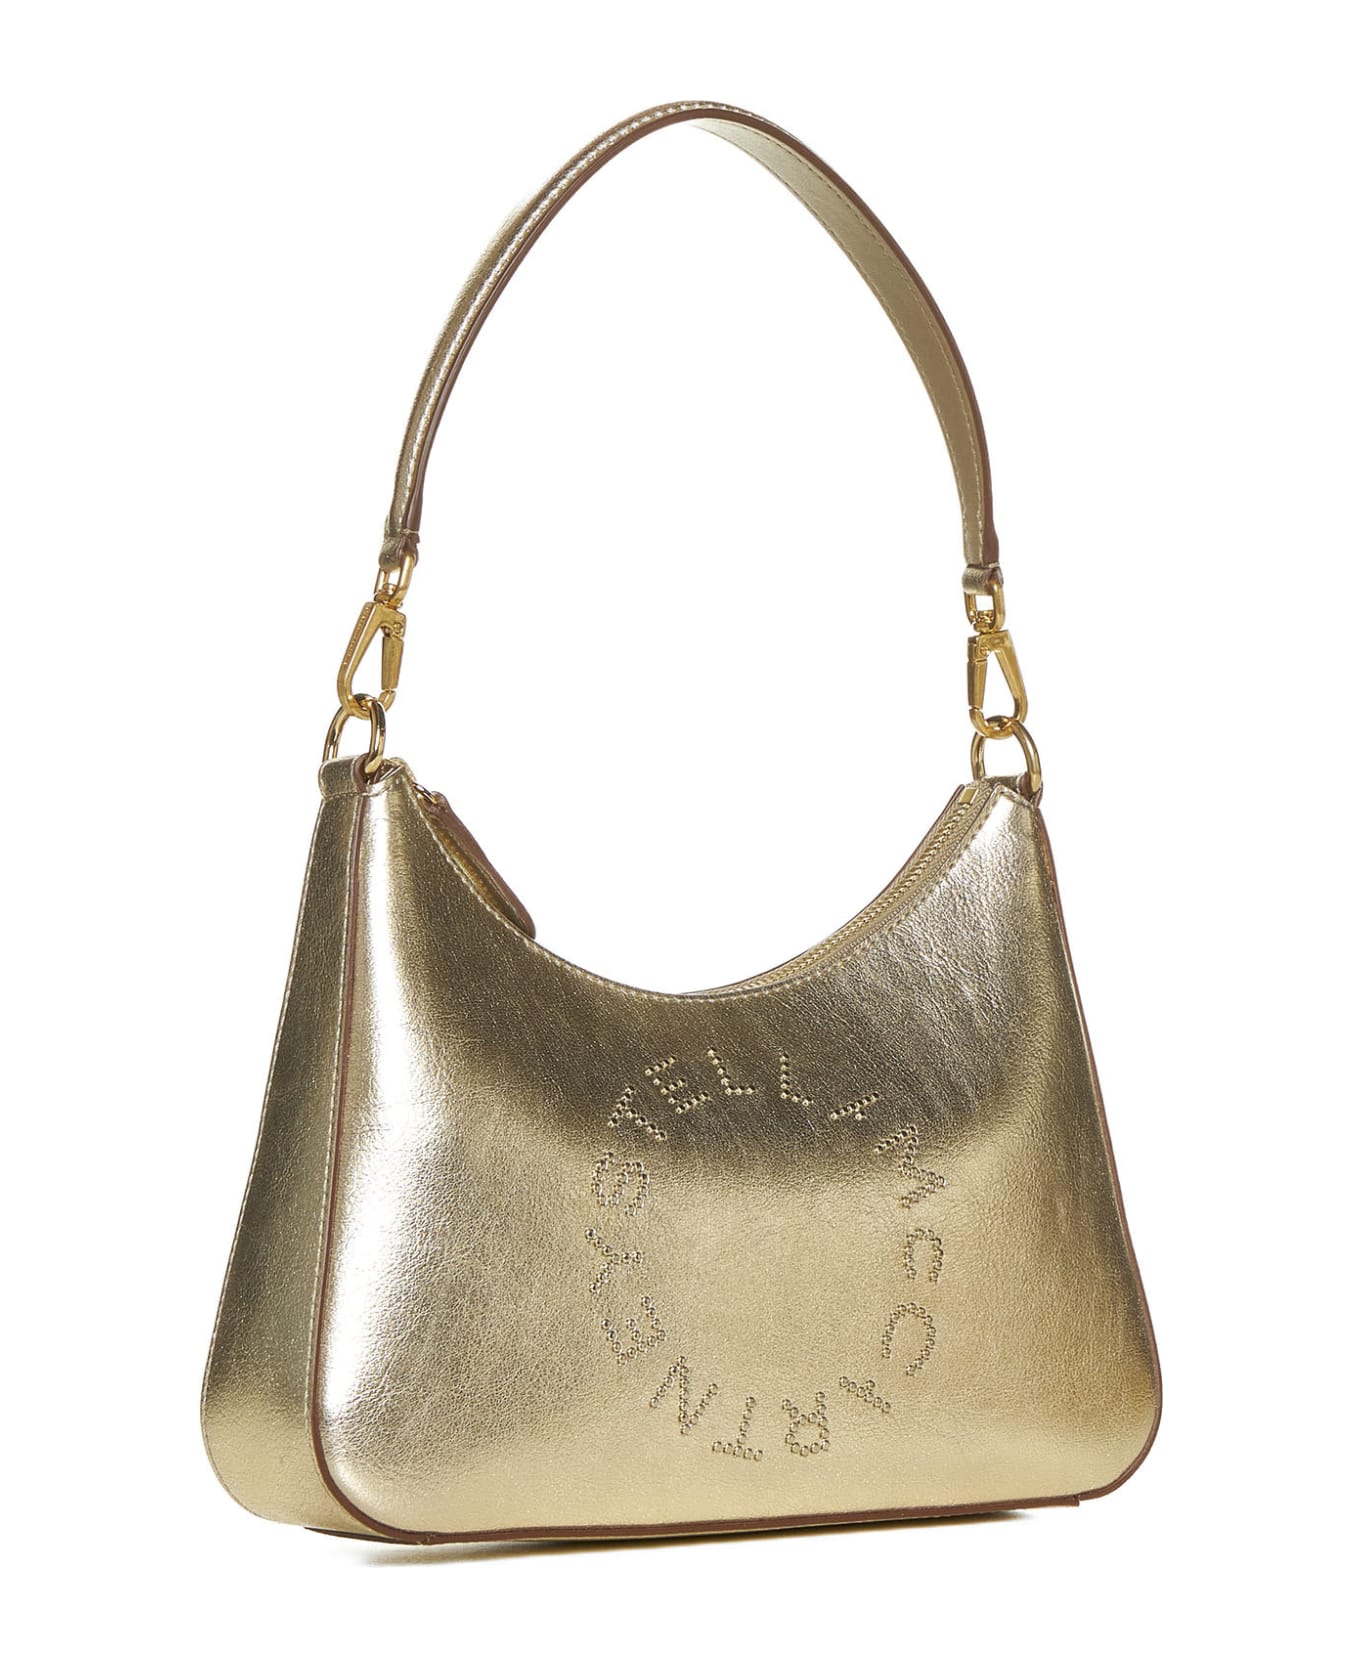 Stella McCartney Shoulder Bag - Light gold